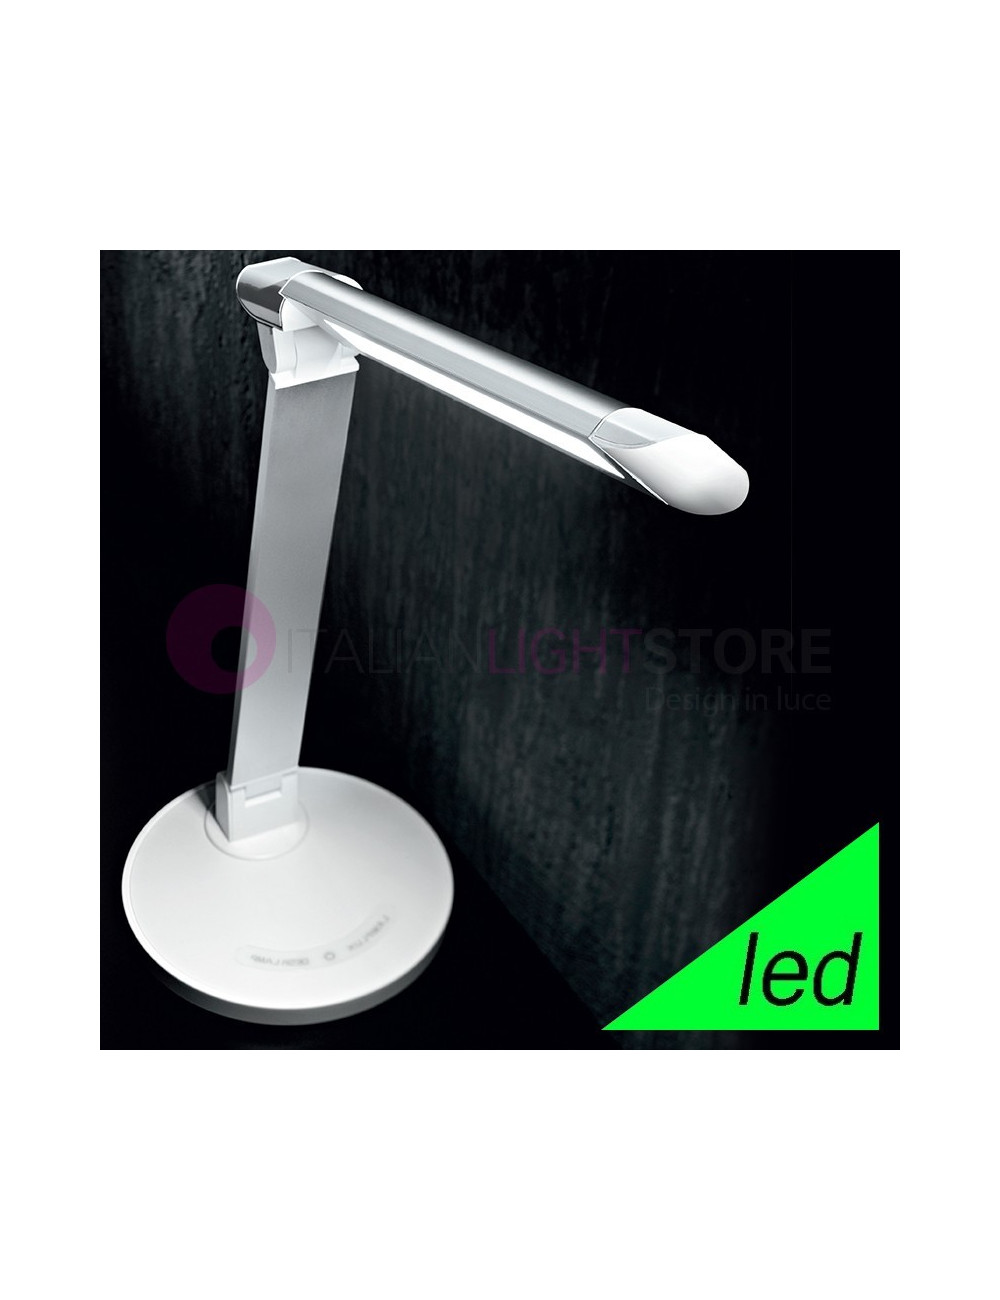 LAMPE DE TABLE LED DE TEMPS DE BUREAU EN ALUMINIUM DESIGN MODERNE | Perenz 6026B